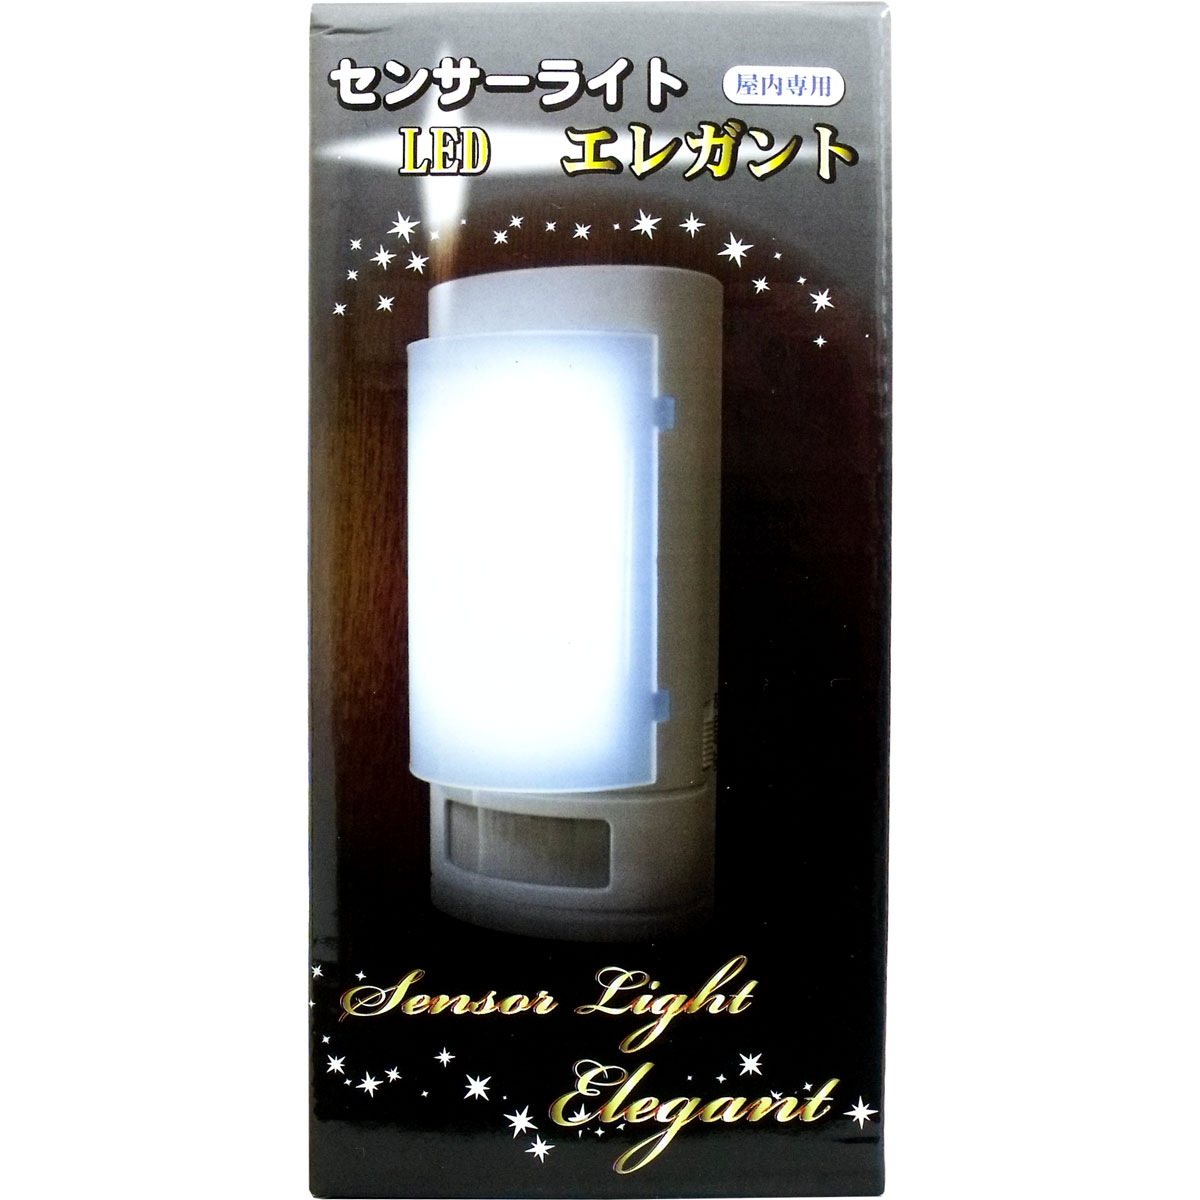 センサーライト LED エレガント 屋内専用...:sokunou:10011305